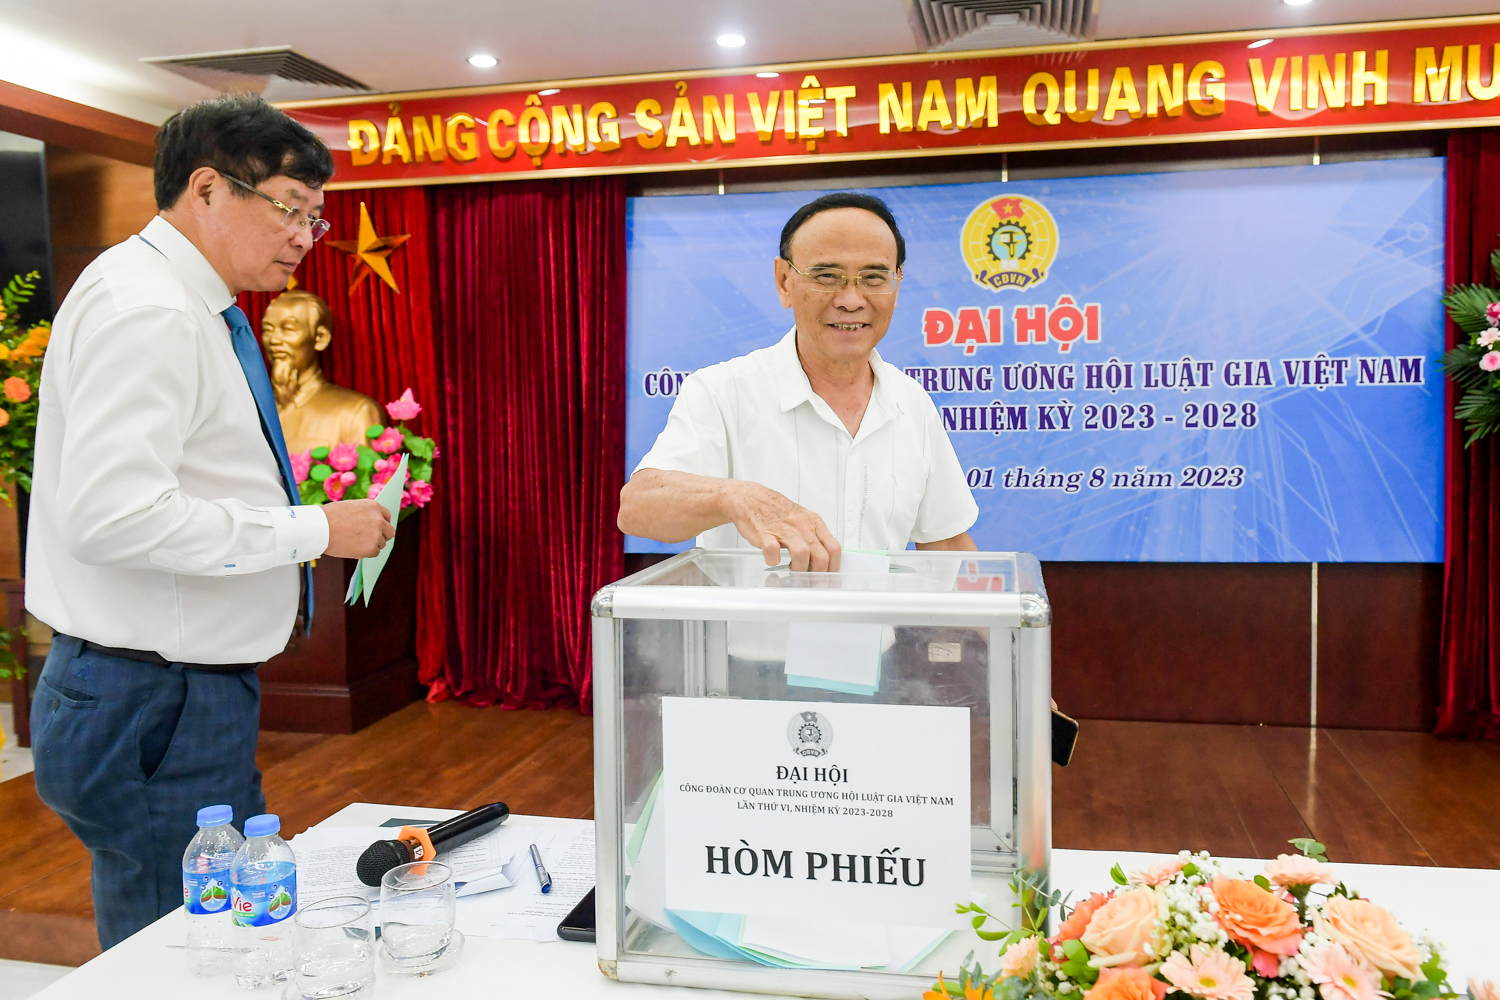 Đại hội công đoàn cơ quan Trung ương Hội Luật gia Việt Nam lần thứ VI